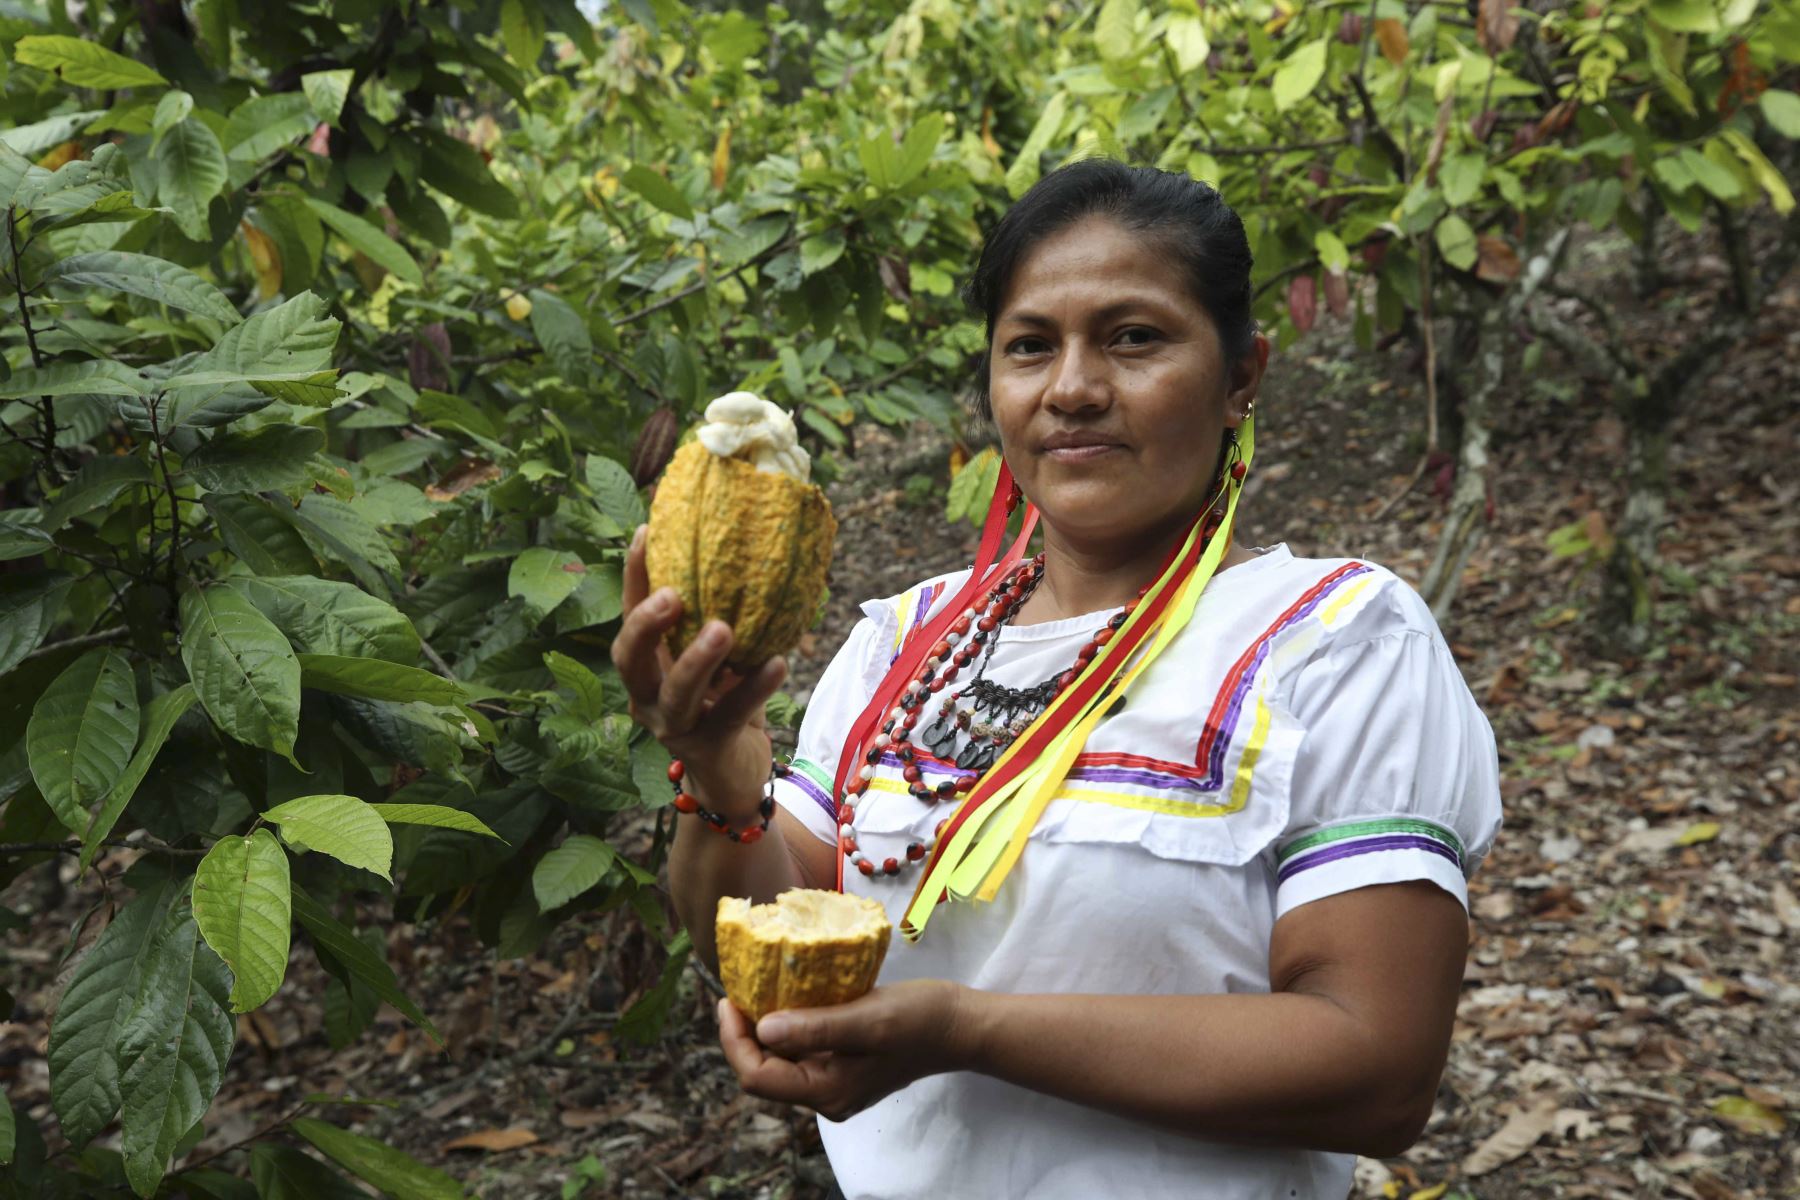 Una miembro de la asociación Chocowarmis sostiene un fruto de cacao en un campo de la comunidad indígena Copal Sacha, en la Amazonía (Perú). Cultivar cacao y producir chocolates ecológicos ha empoderado a las mujeres de la asociación peruana Chocowarmis, favorecidas por el alto precio que este fruto ha alcanzado en los últimos meses.
Foto: EFE